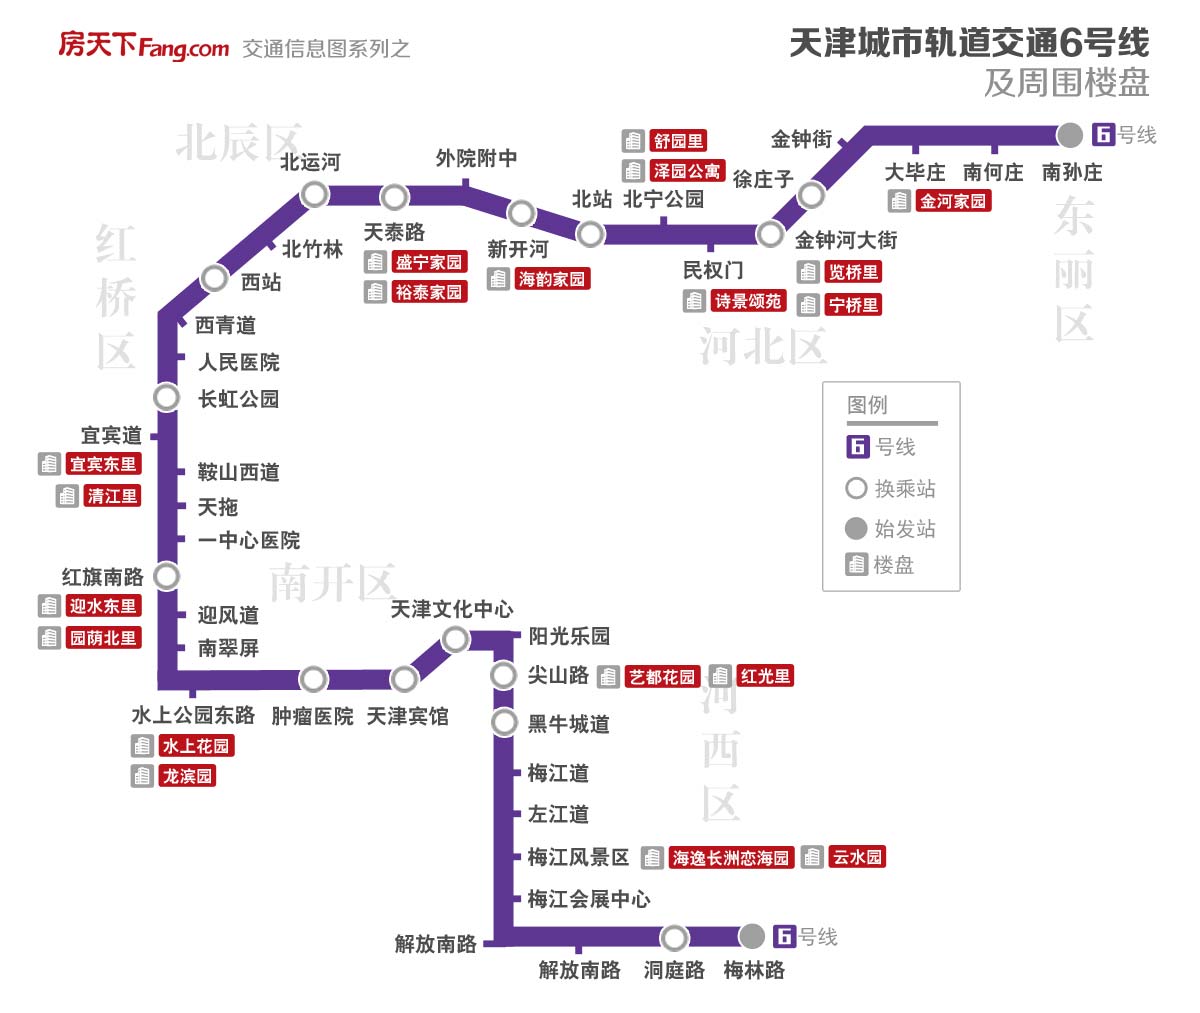 【津铁达人】【天津地铁】地铁达人建设者为大家用文字解说TRT的天津地铁。（1号线篇） - 哔哩哔哩